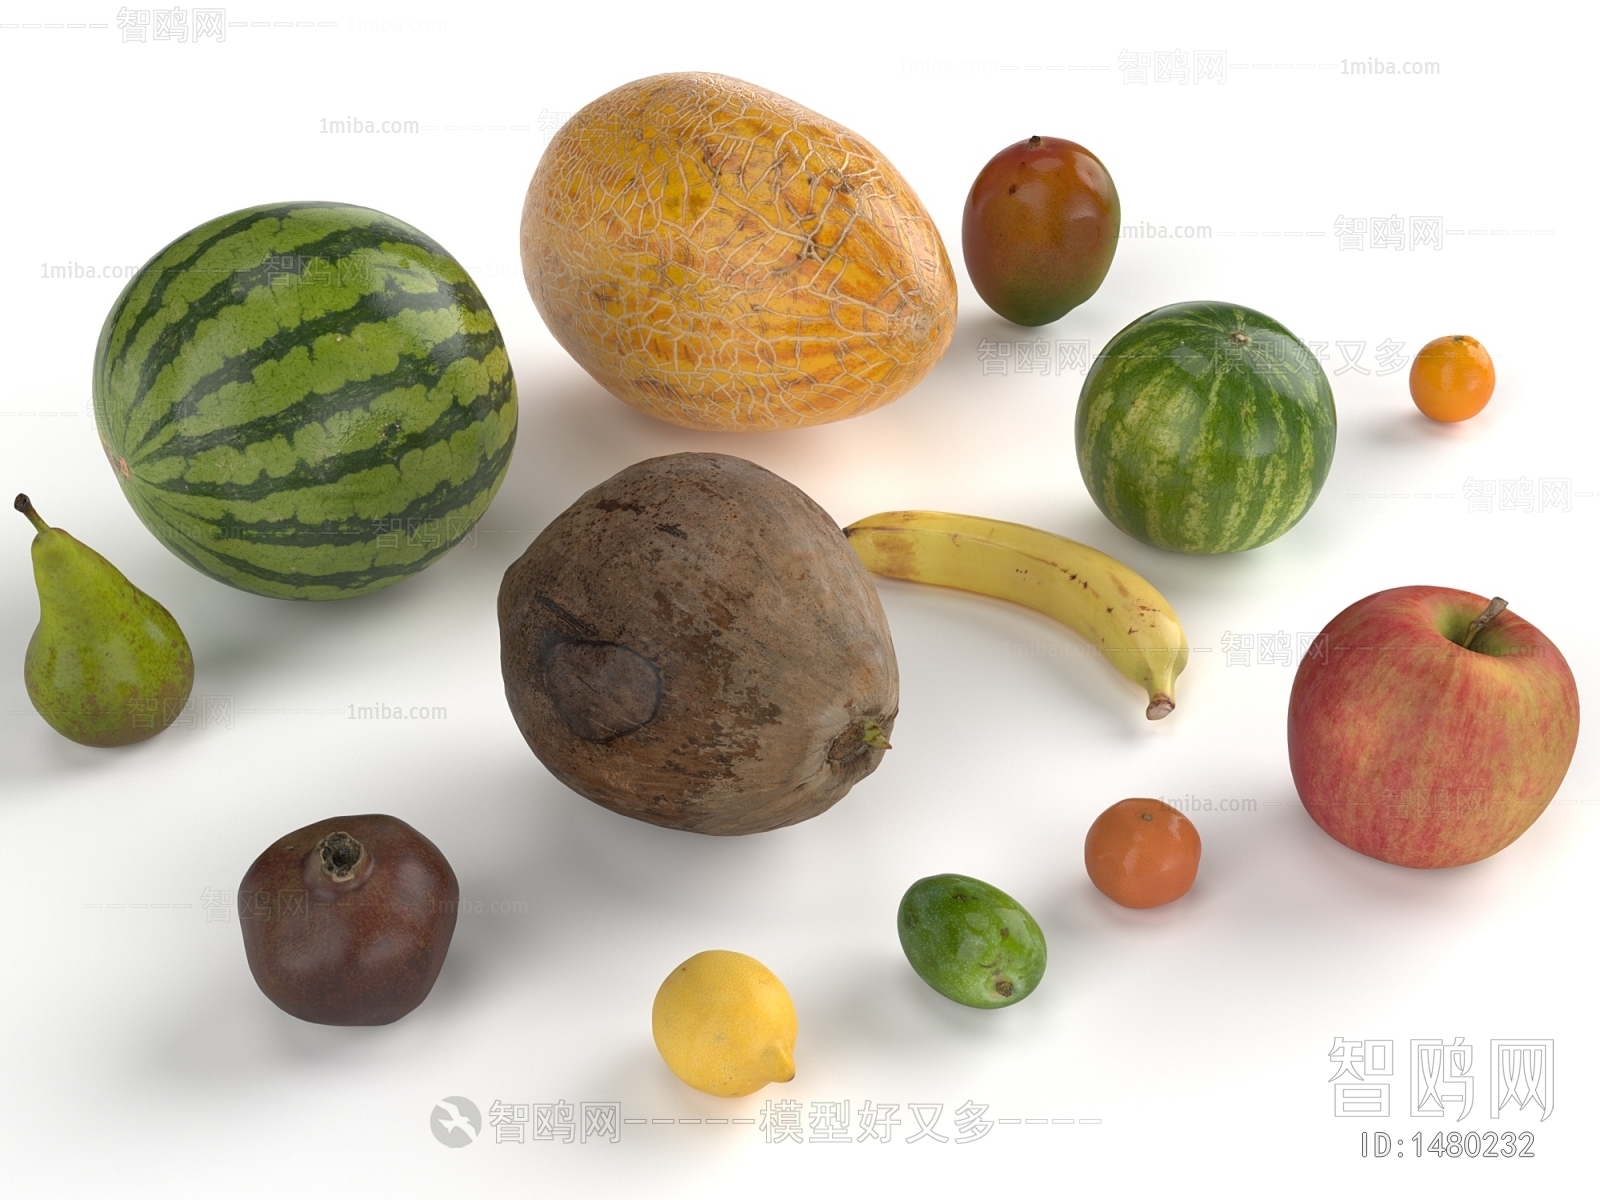 Modern Fruit